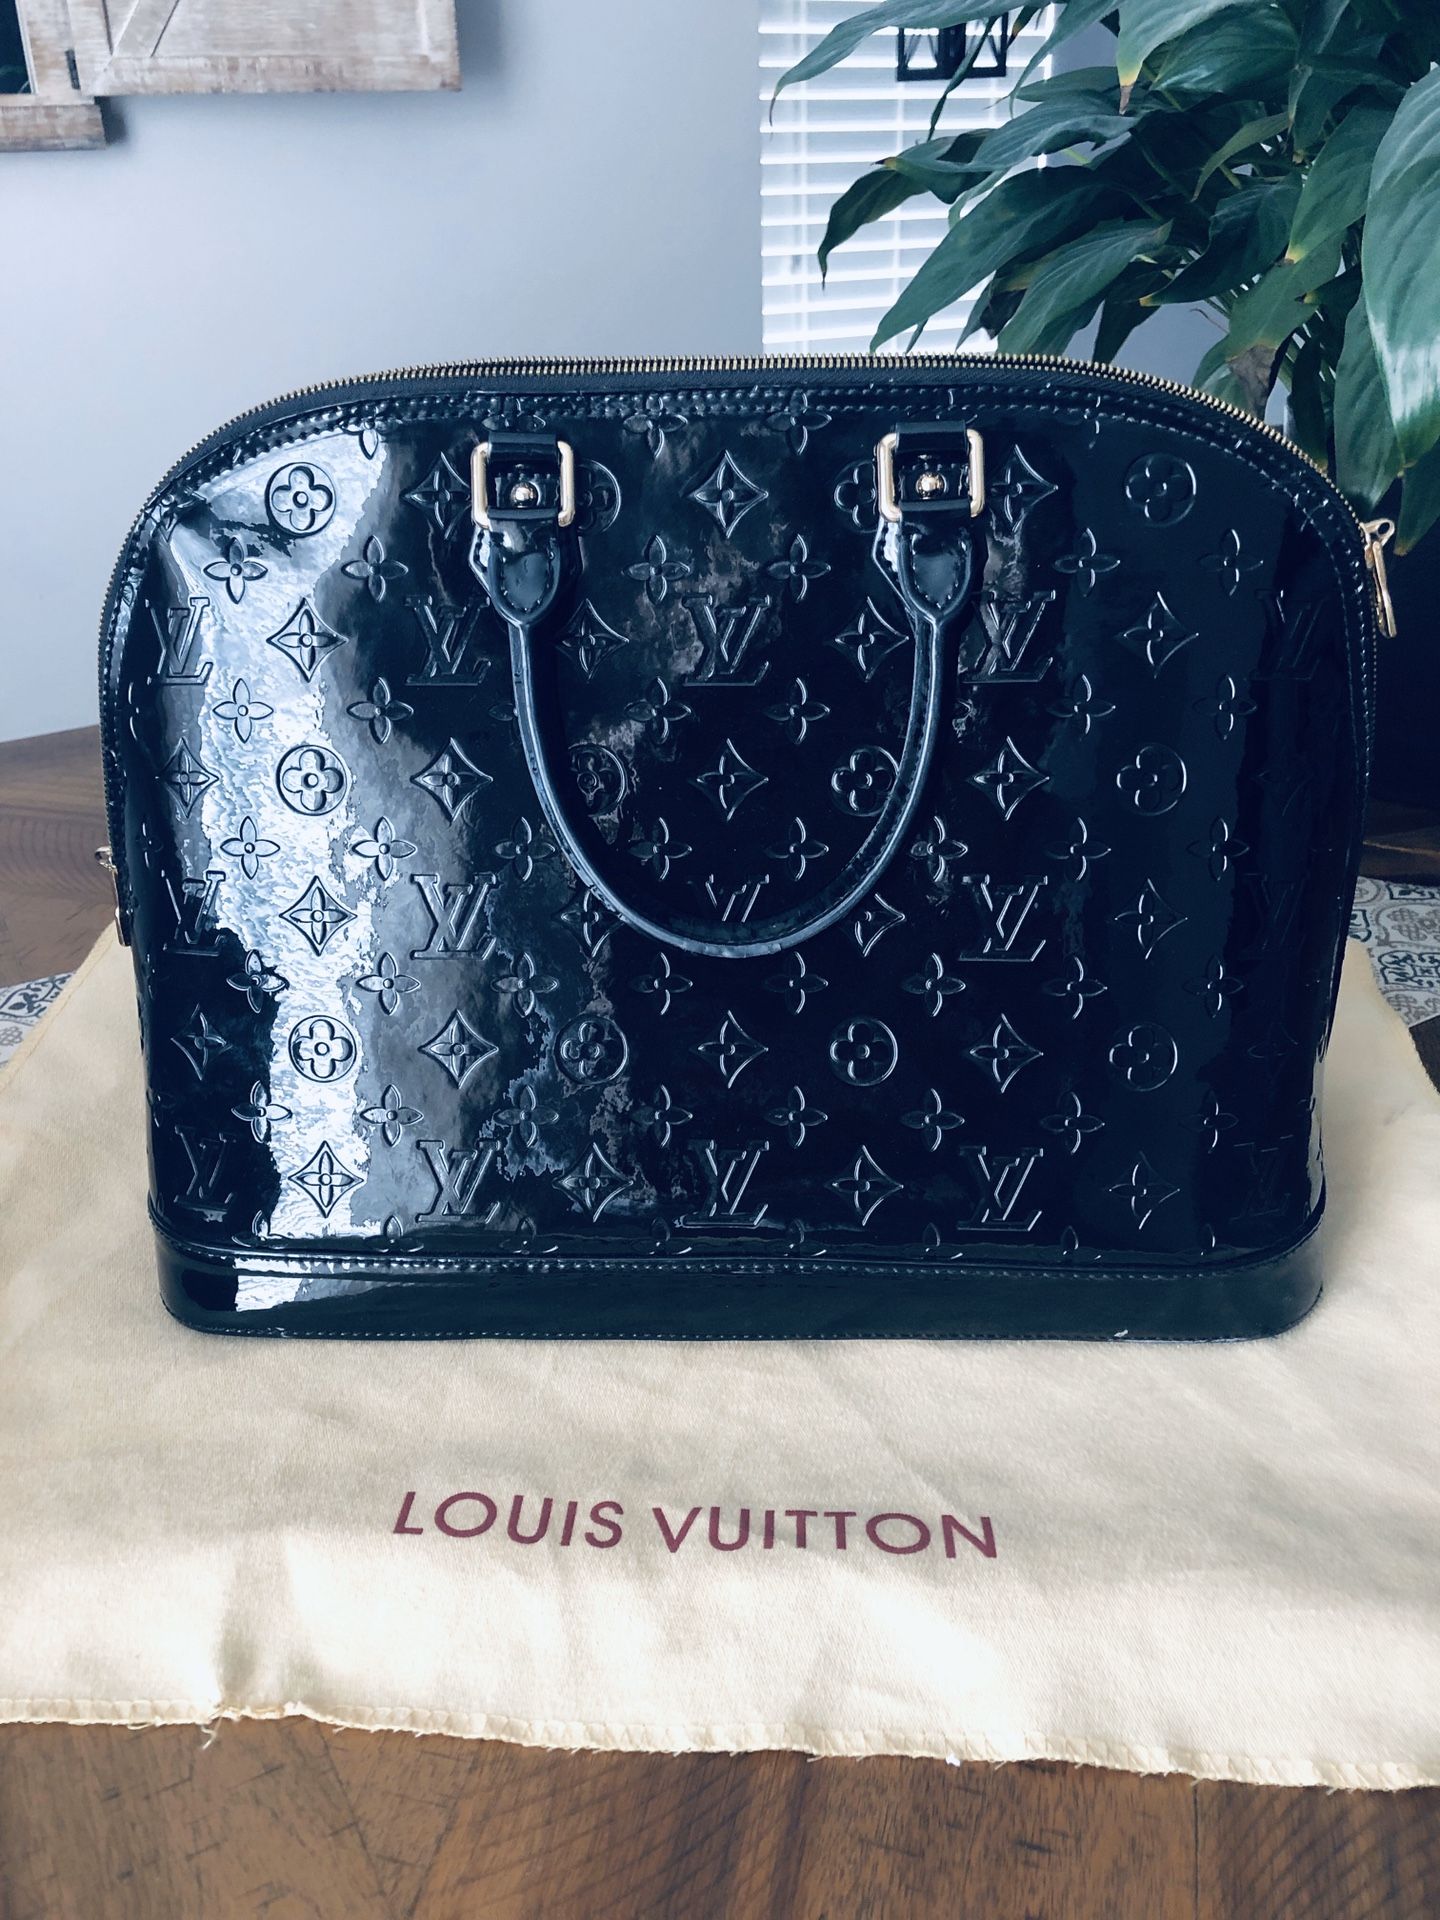 Louis Vuitton Vernis black bag